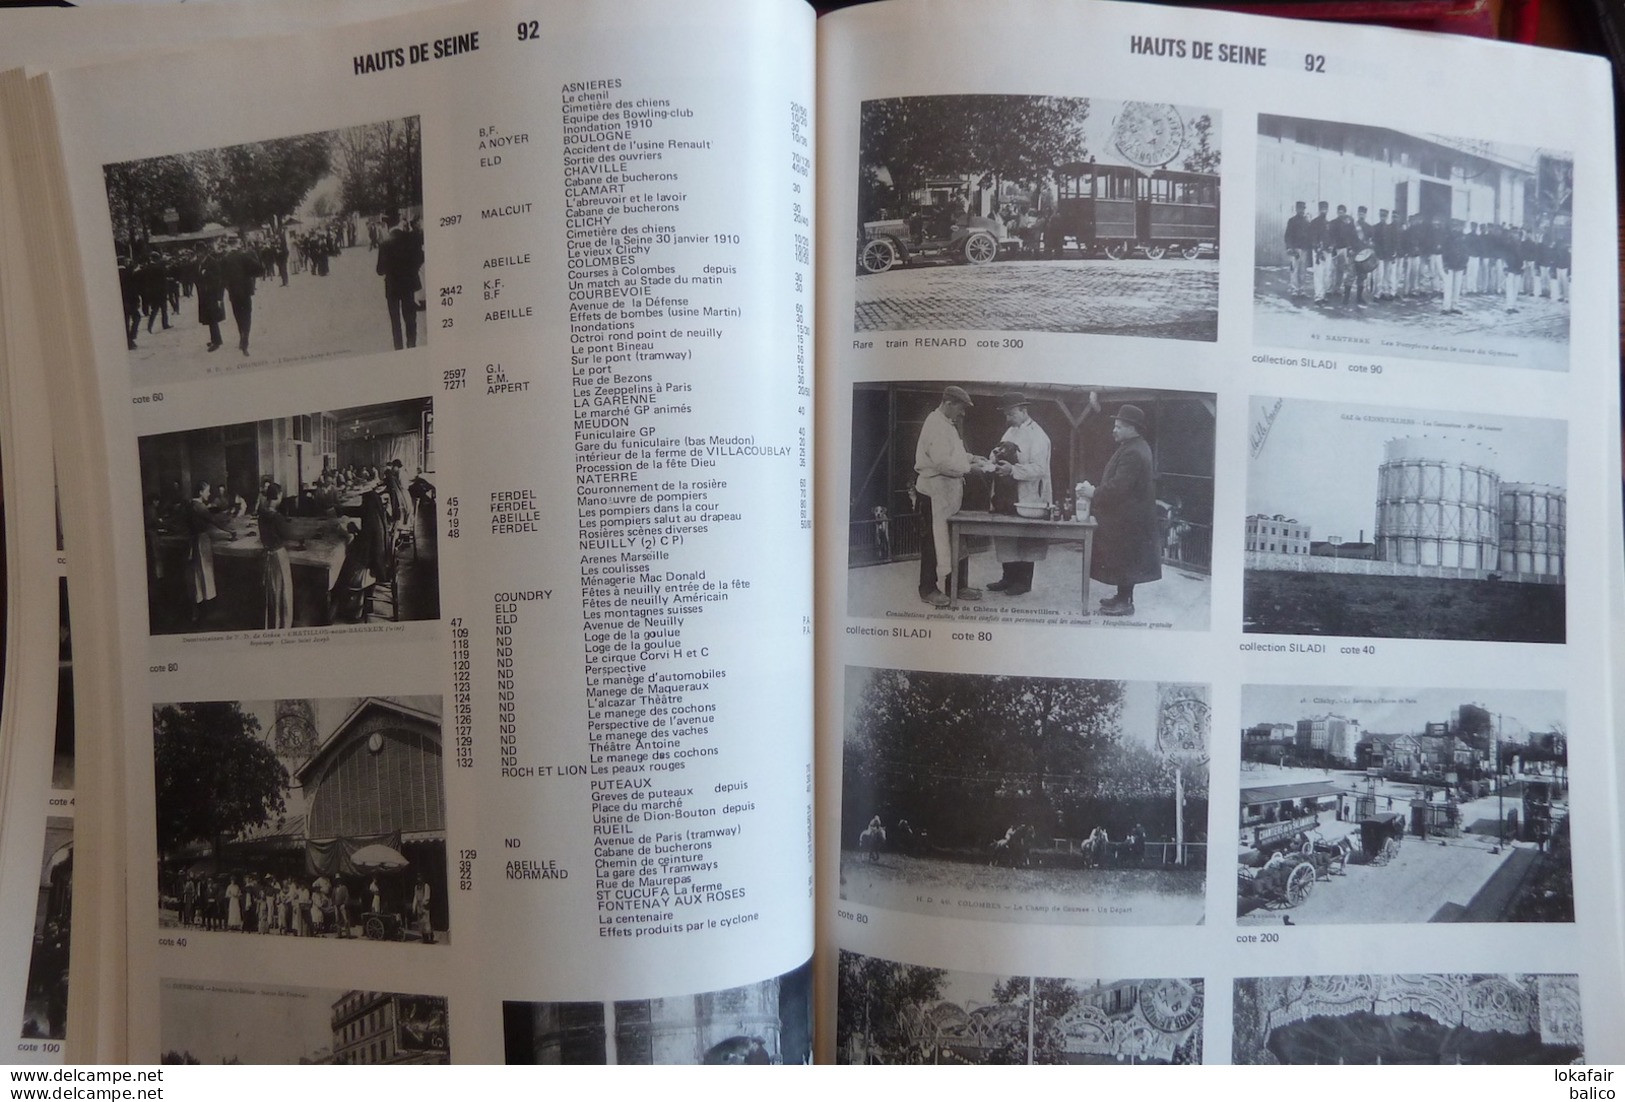 ARGUS  BAUDET - 1978 / 1979 Encyclopédie Internationale de la Cartes Postales Anciennes  (Avec quelques pages sur 352)